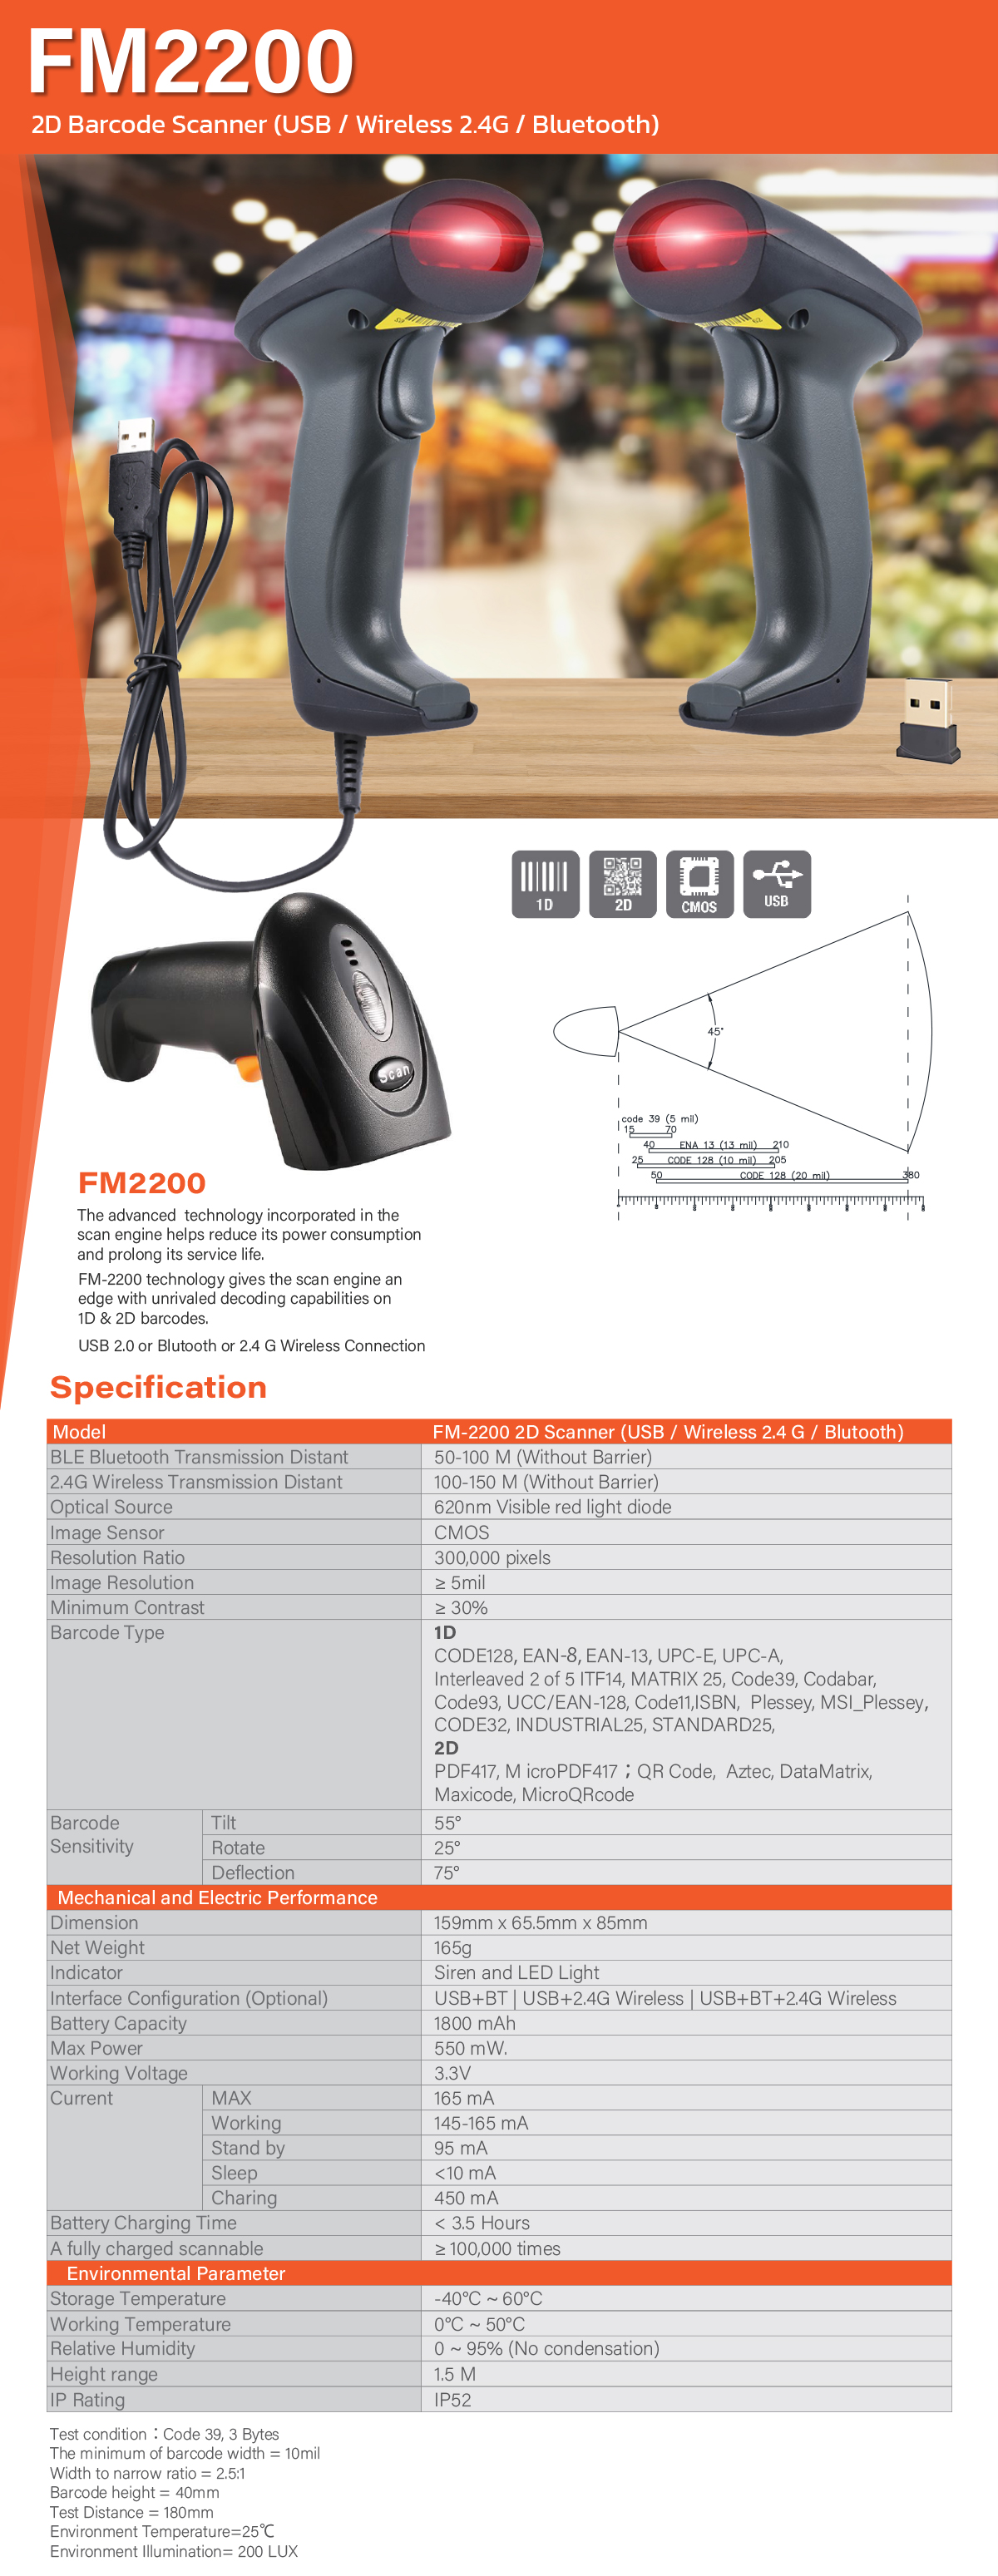 FM-2200 Barcode Scanner